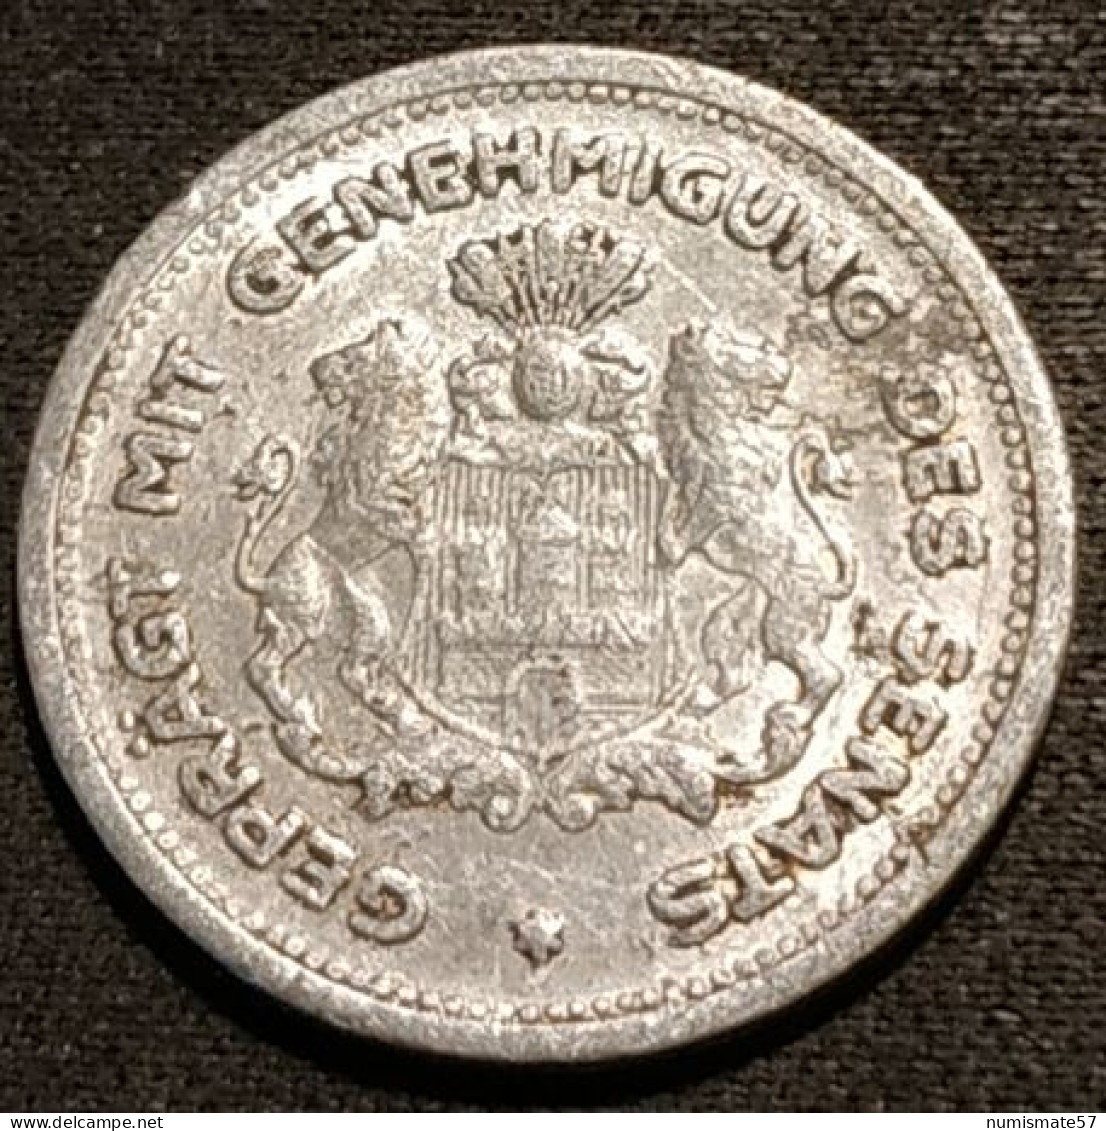 ALLEMAGNE - GERMANY - 1/100 Verrechnungsmarke - Hamburg - 1923 - Funck# 637.1a - KM# Tn1 - Noodgeld